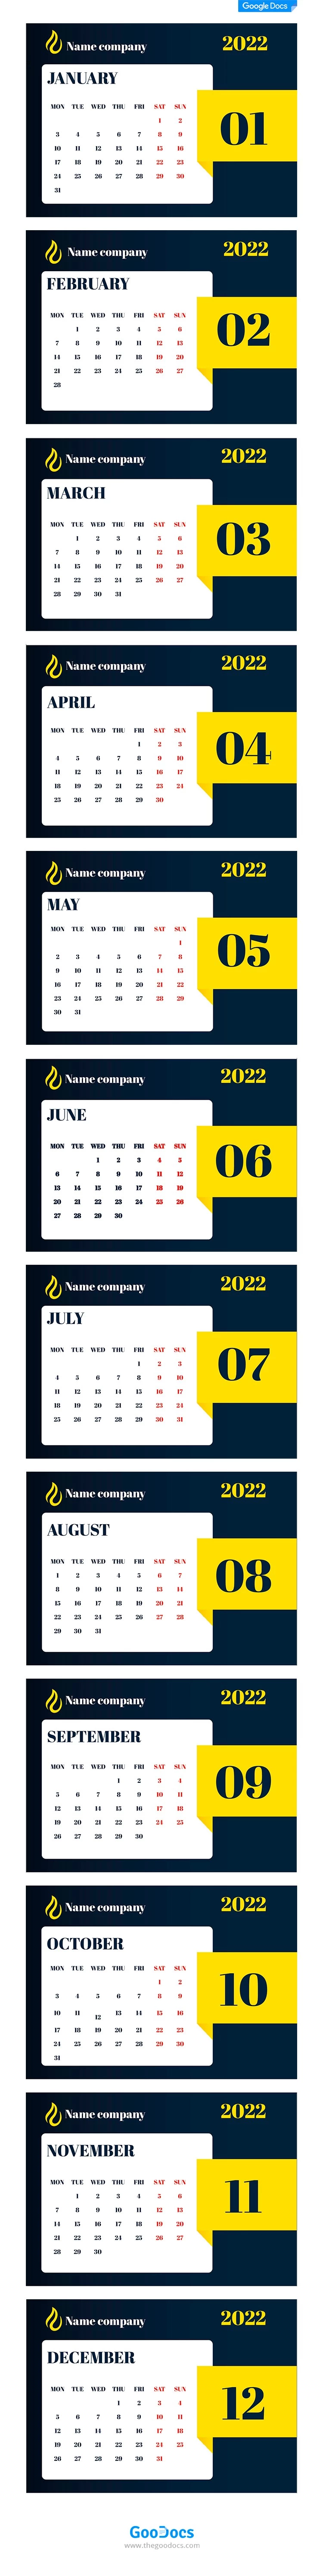 Fancy Business Calendar - free Google Docs Template - 10062056